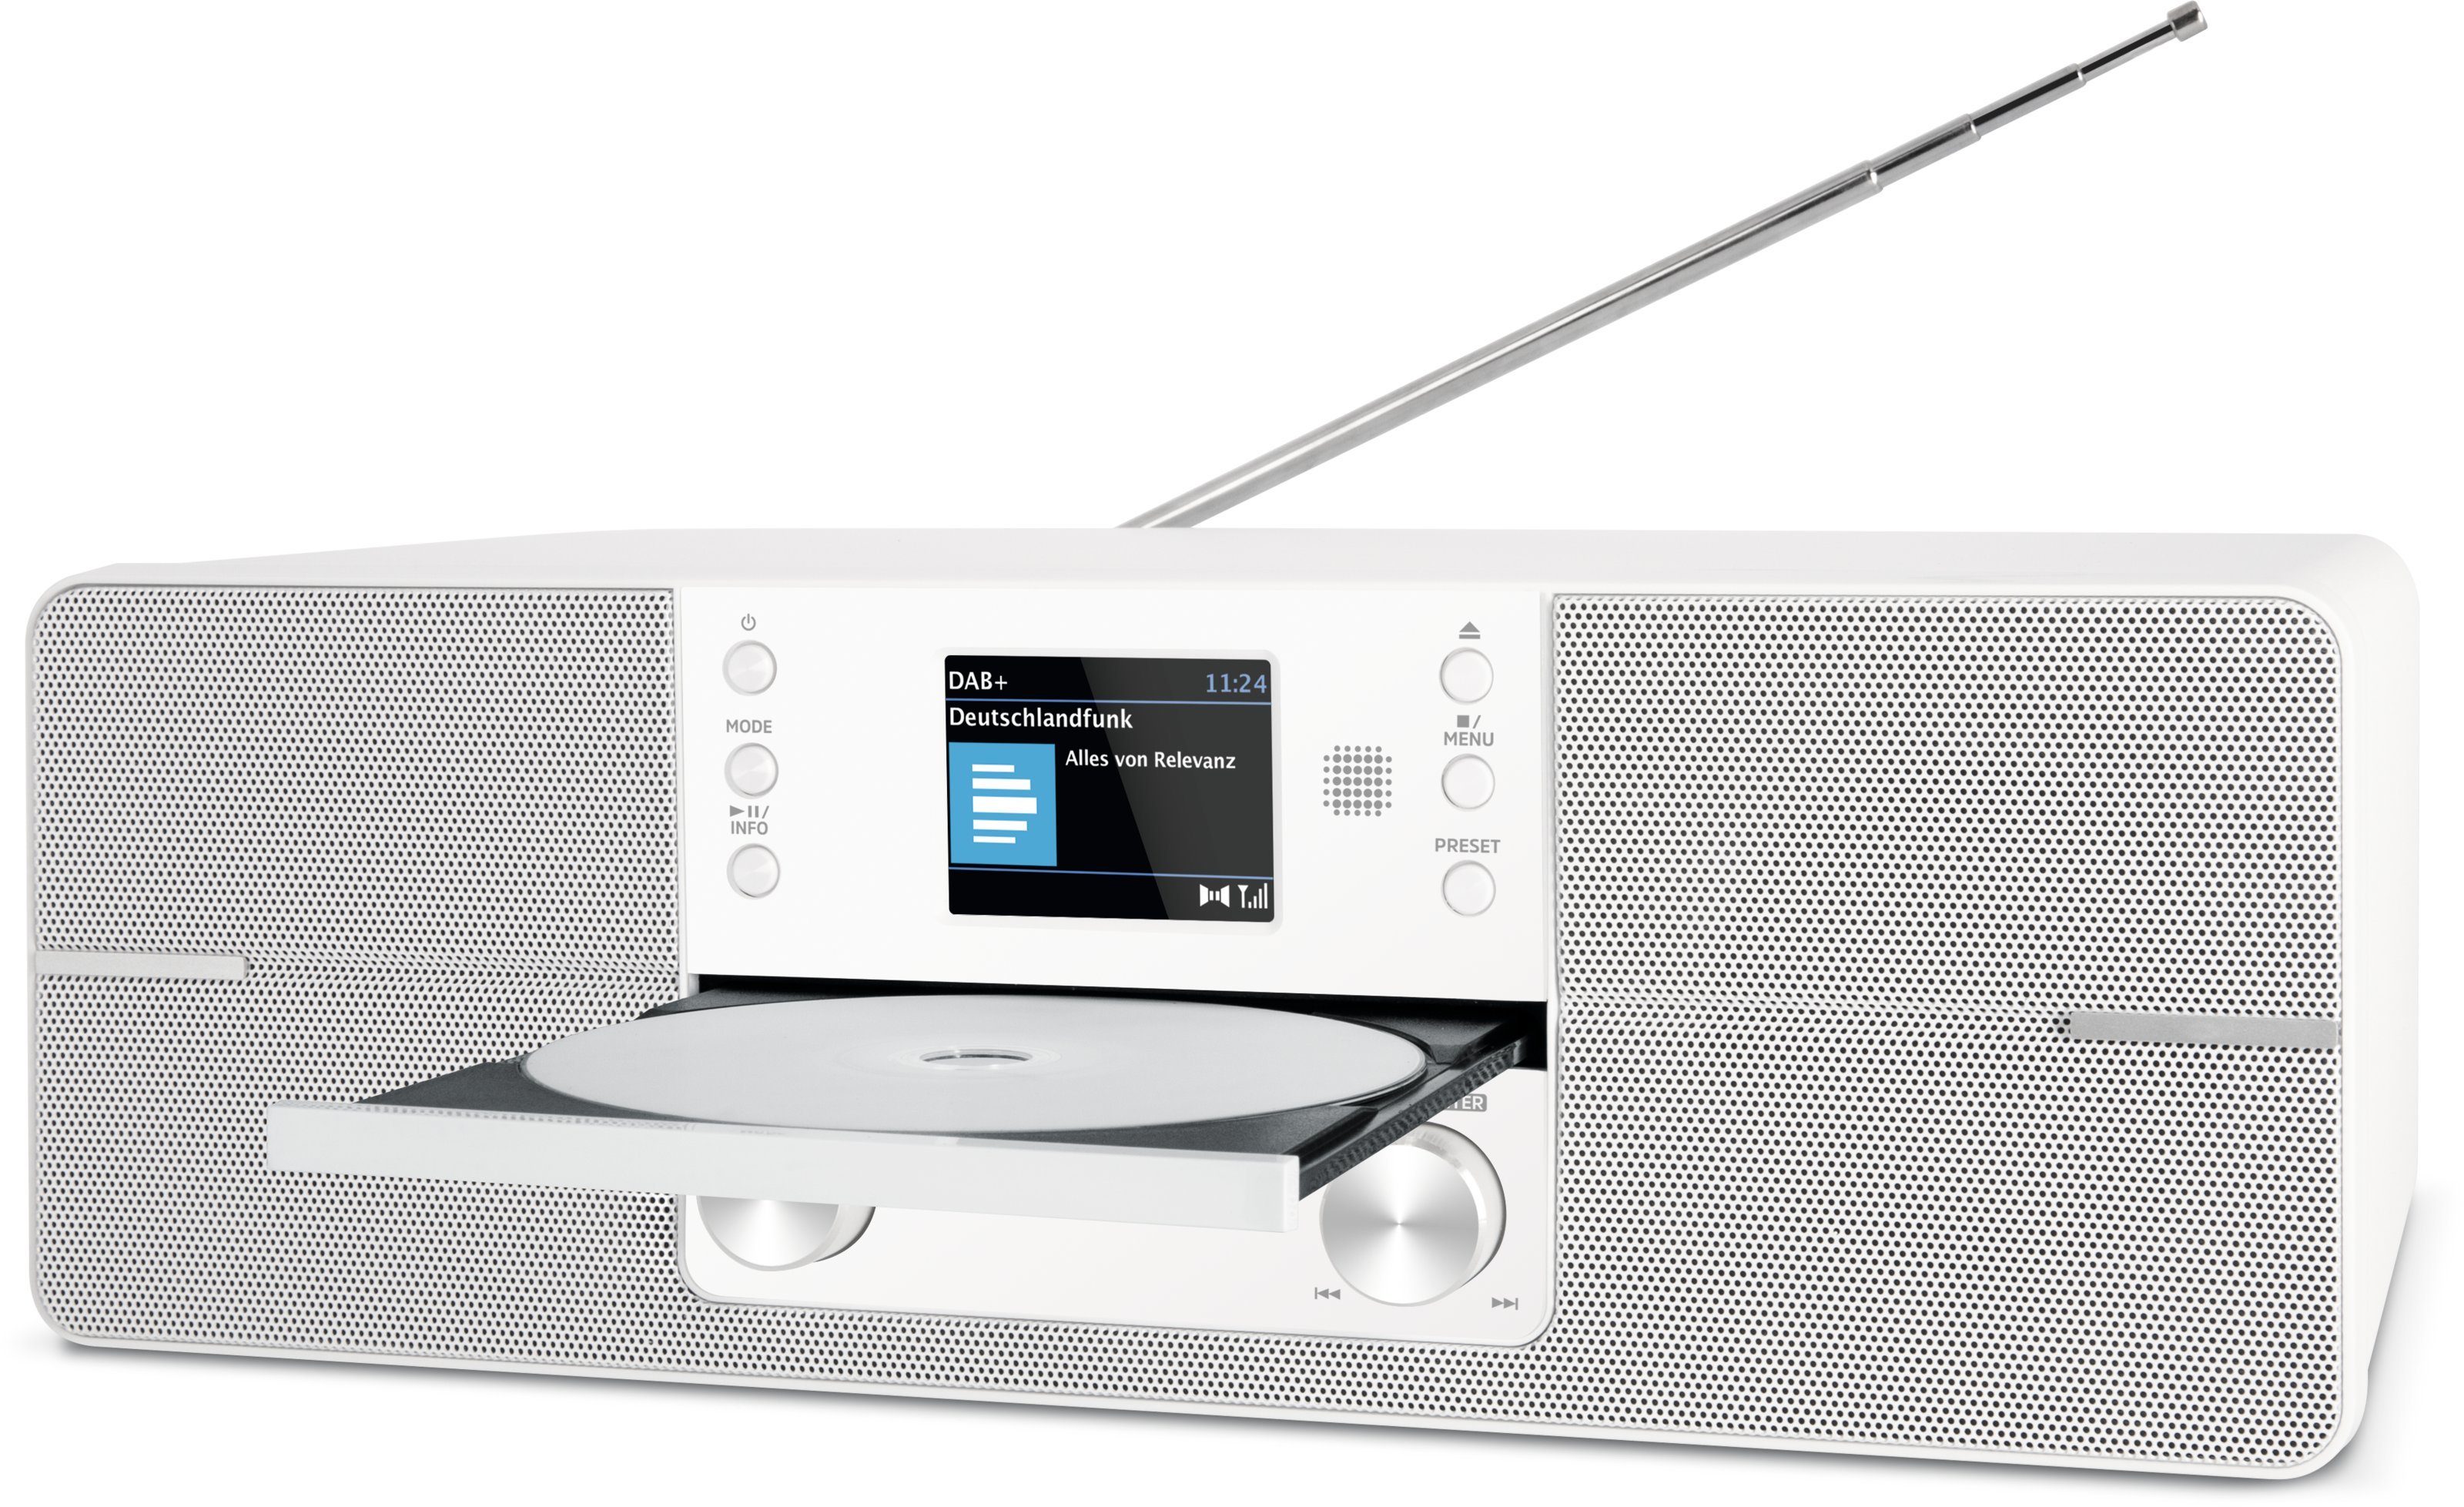 TechniSat DIGITRADIO 371 CD Bluetooth, weiß (DAB), W, (Digitalradio 10,00 BT UKW, CD-Player, (DAB) Radiowecktimer, Inklusive Fernbedienung) Digitalradio